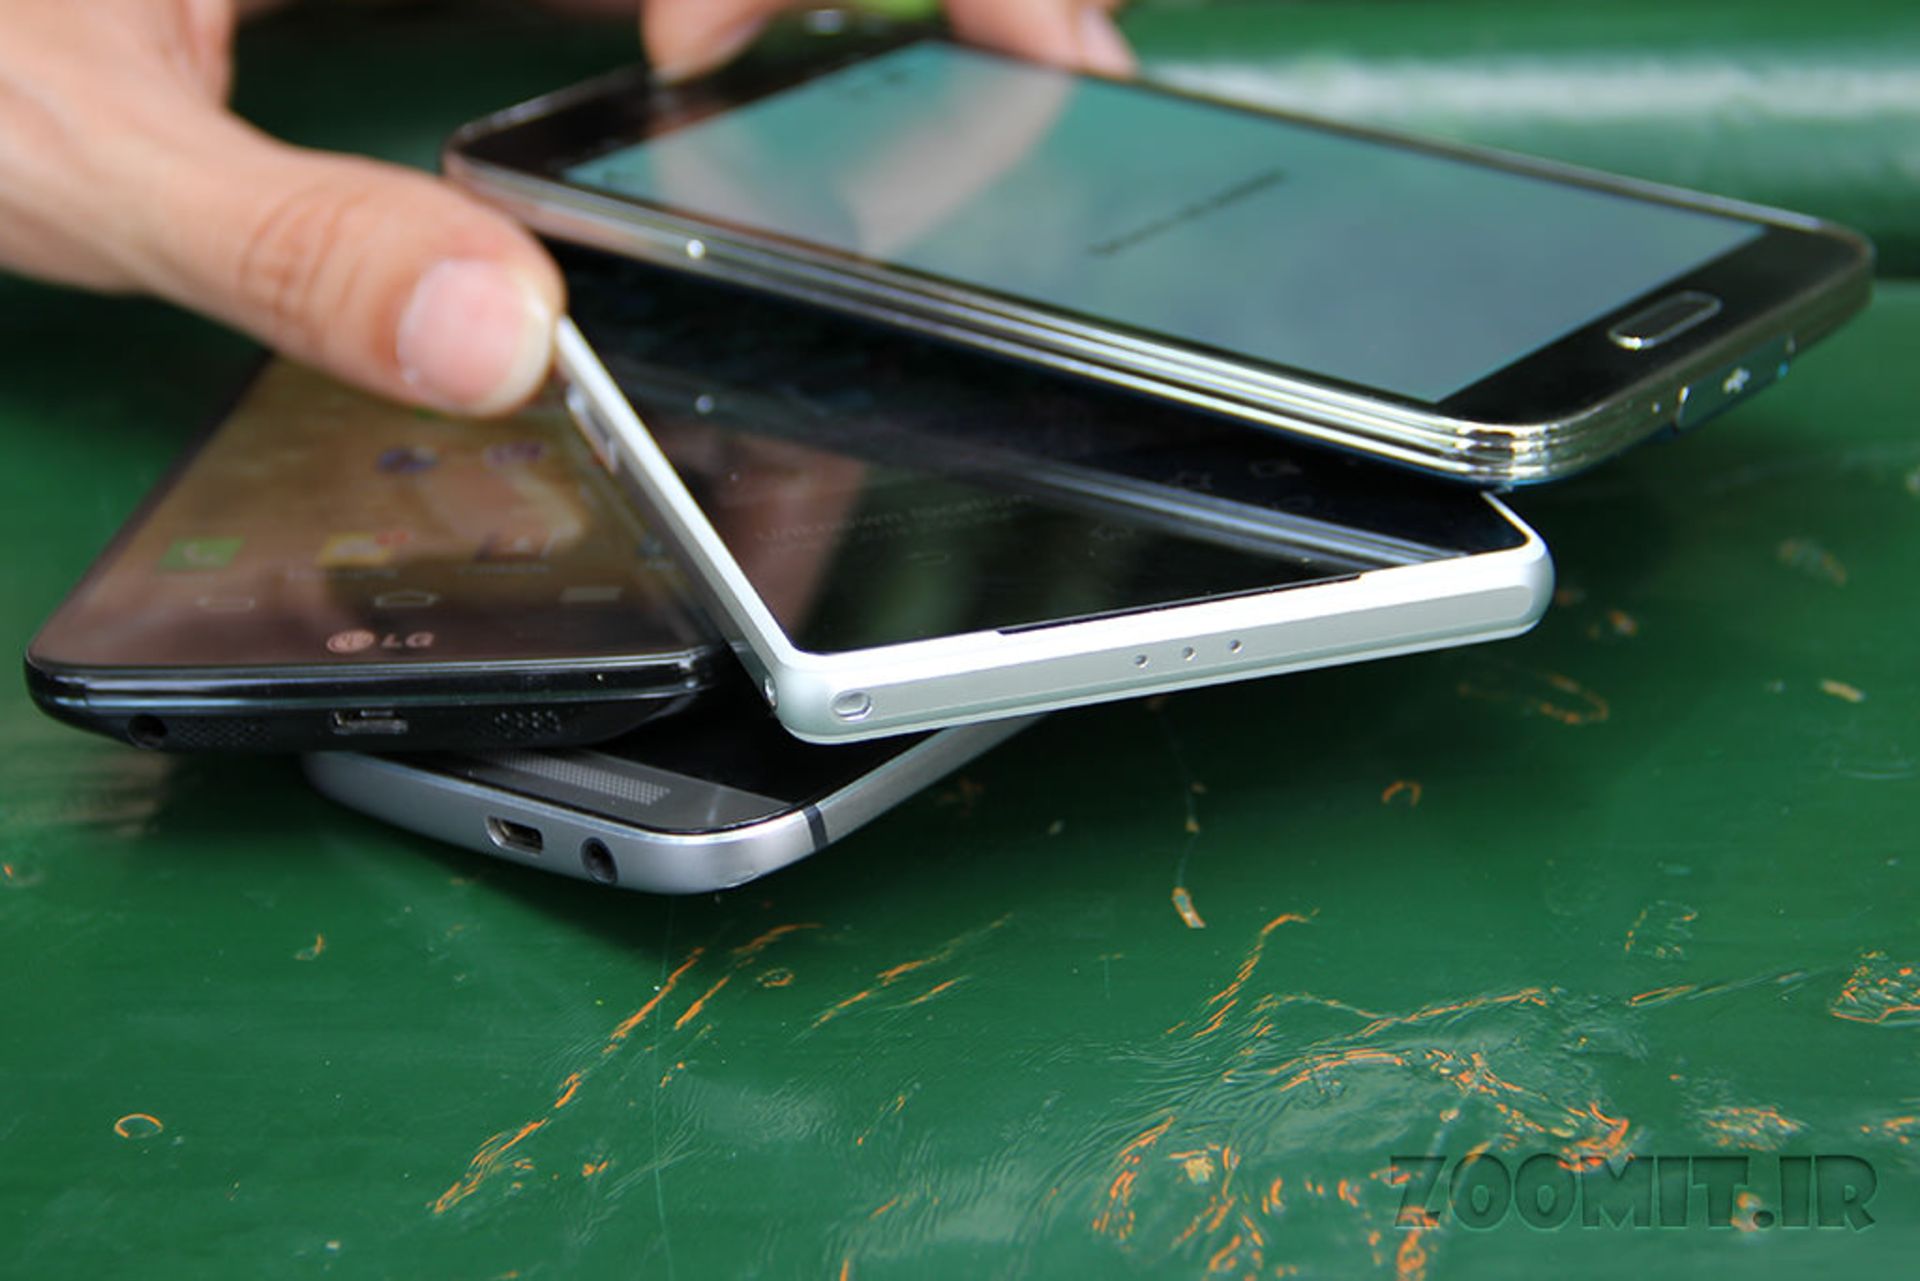 Xperia Z2 vs Galaxy s5 vs HTC One M8